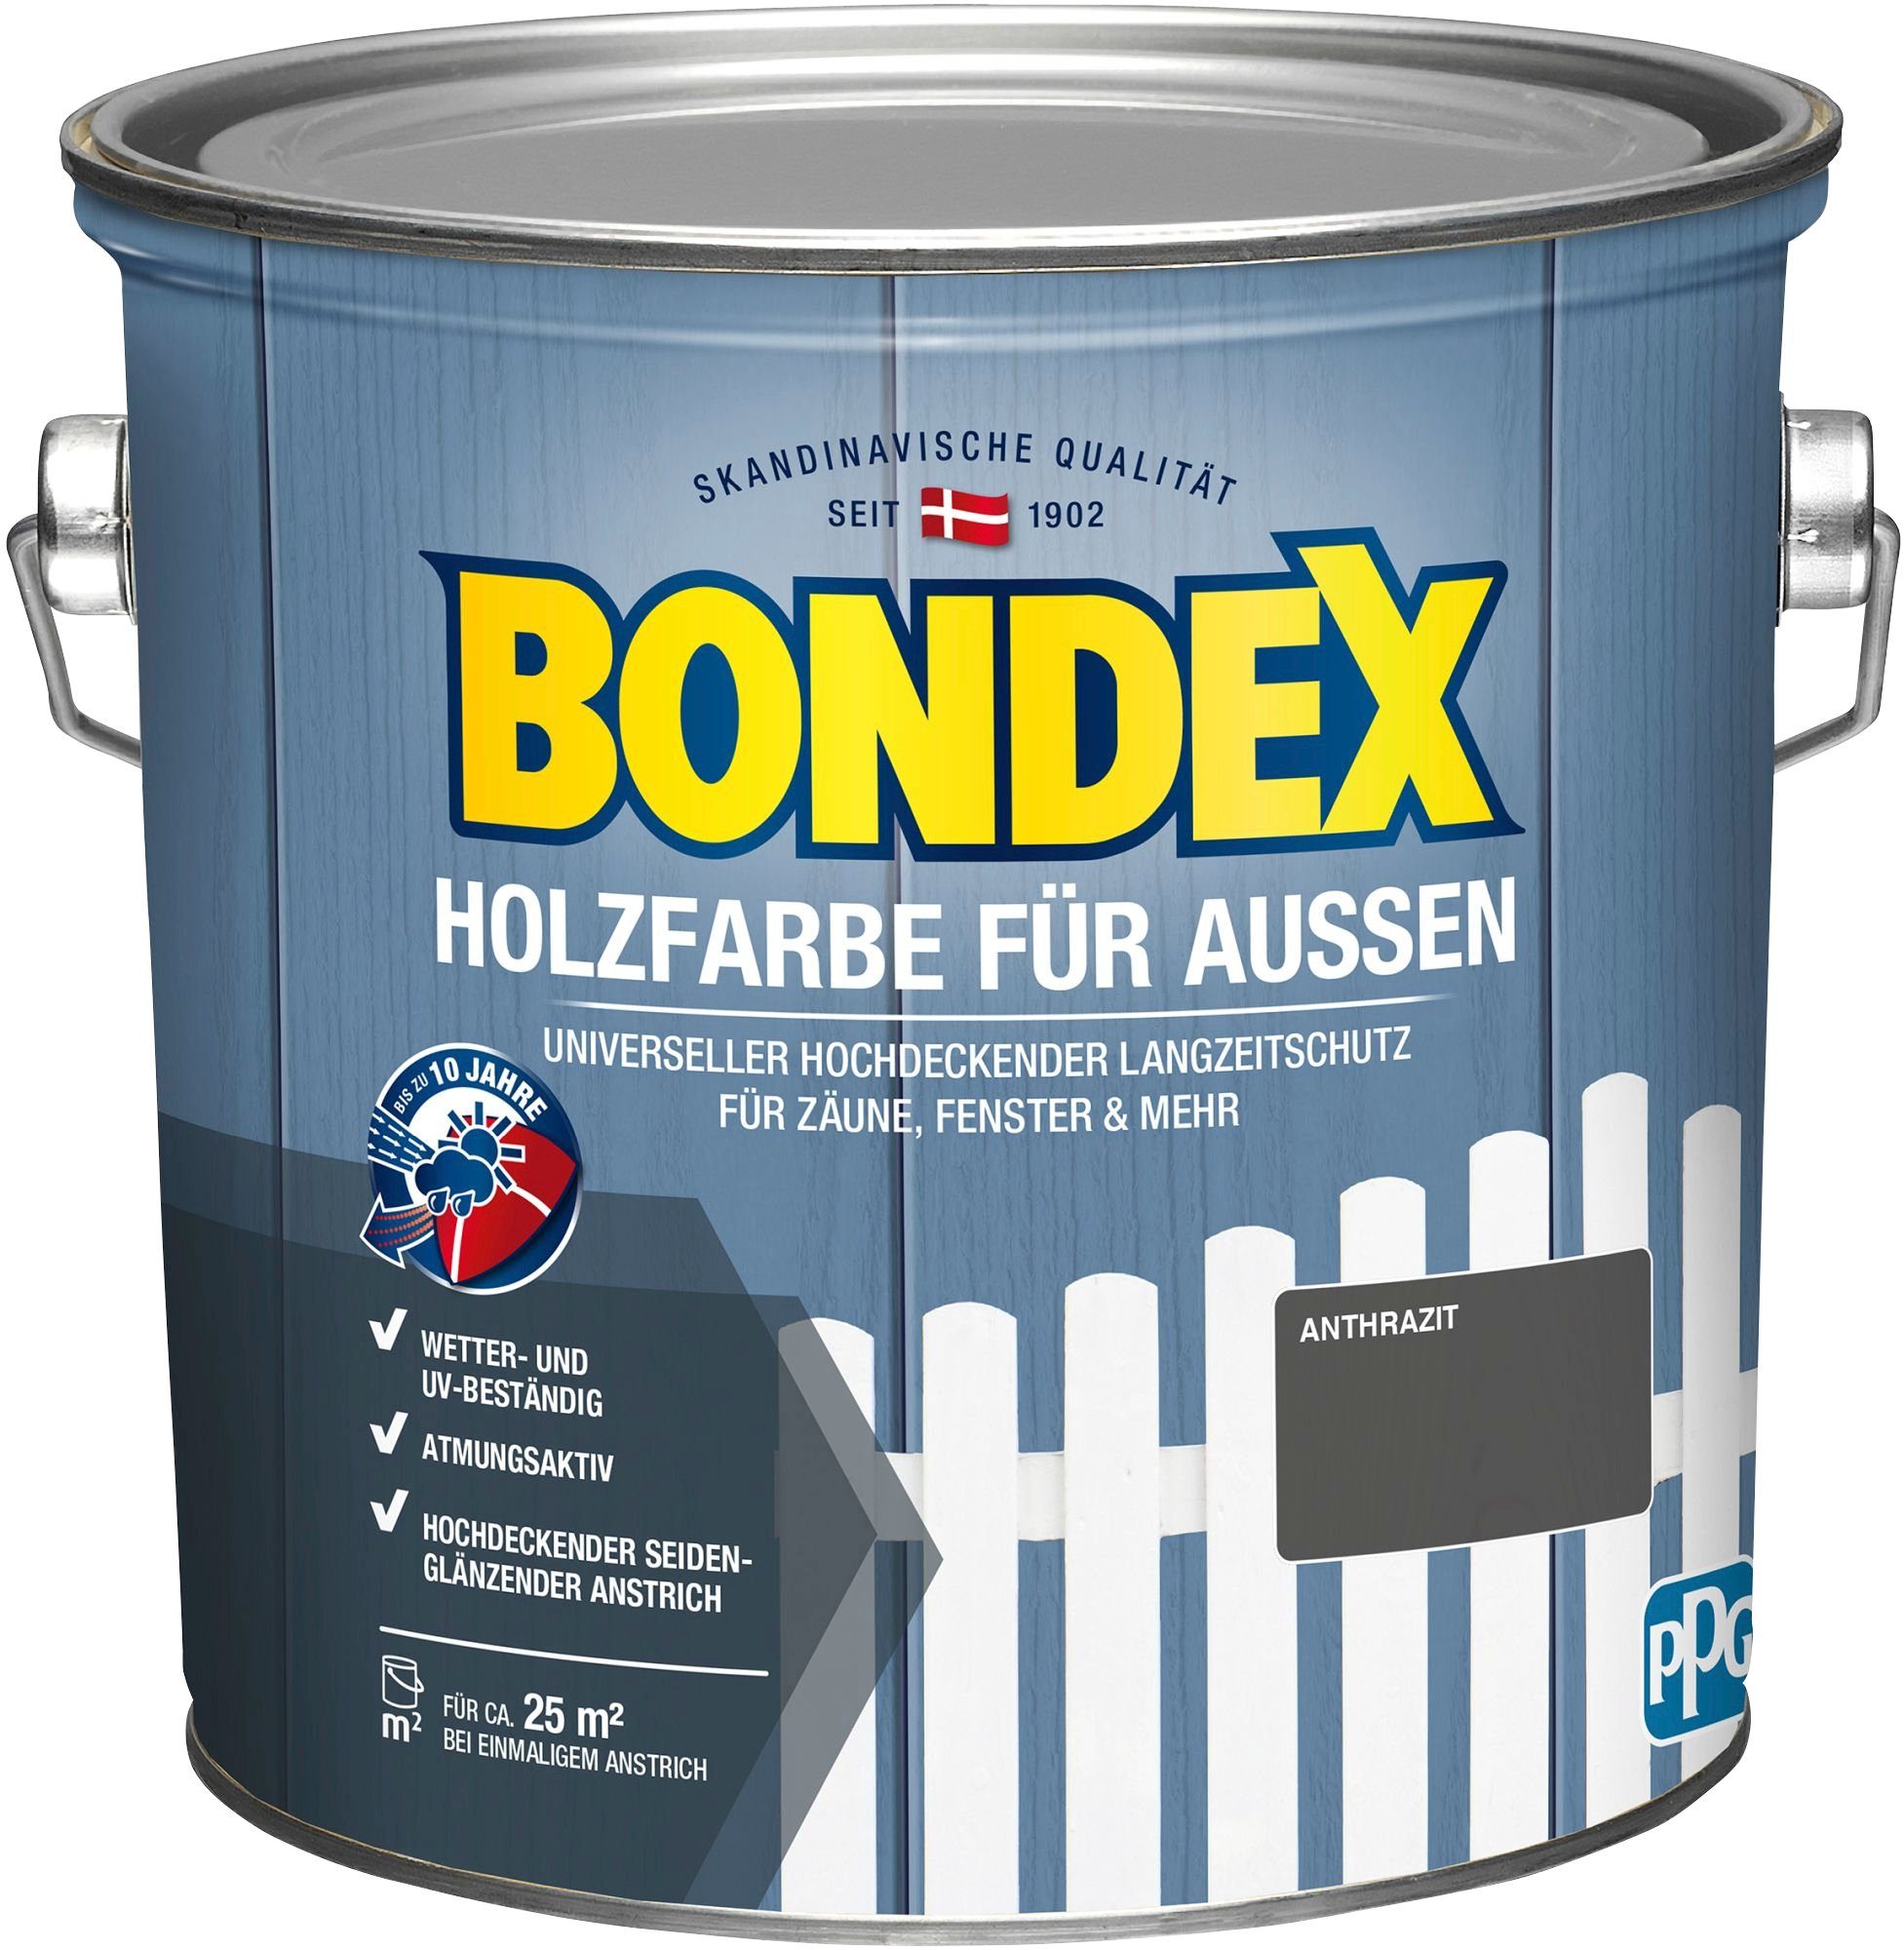 Bondex Wetterschutzfarbe HOLZFARBE FÜR AUSSEN, universeller hochdeckender Langzeit-Wetterschutz für Zäune & Fenster anthrazit